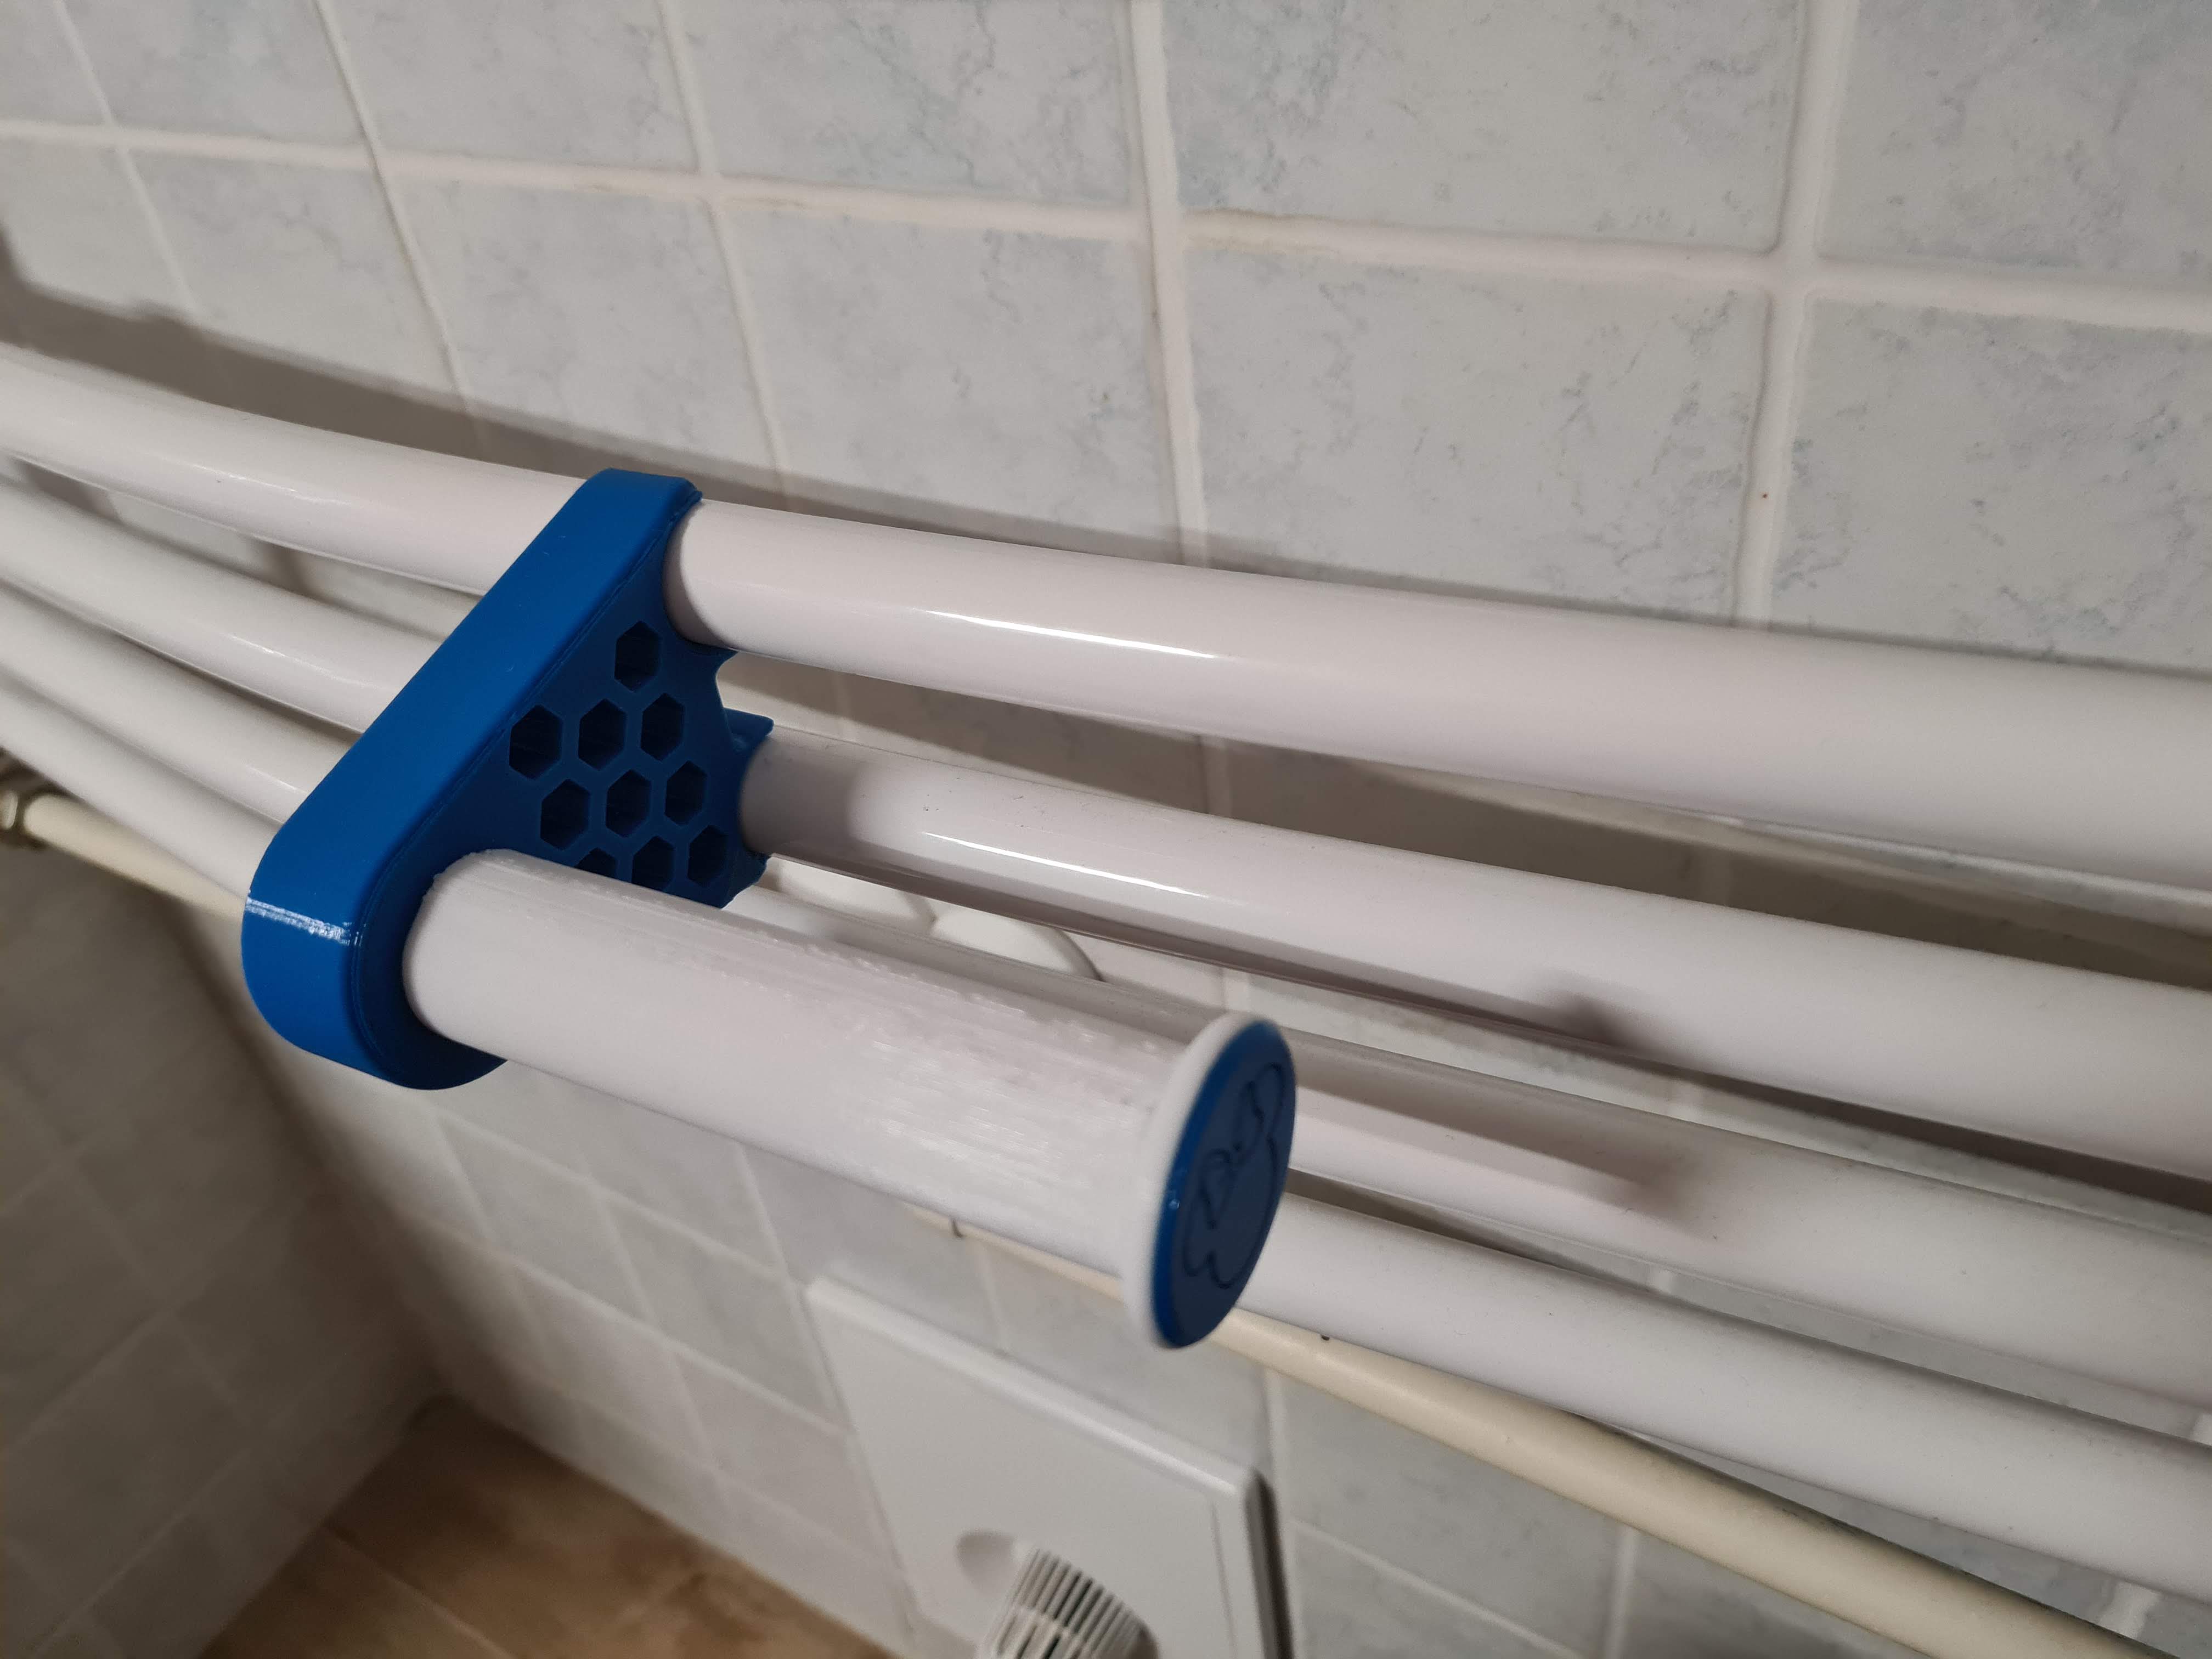 Toilet paper holder for bathroom radiator